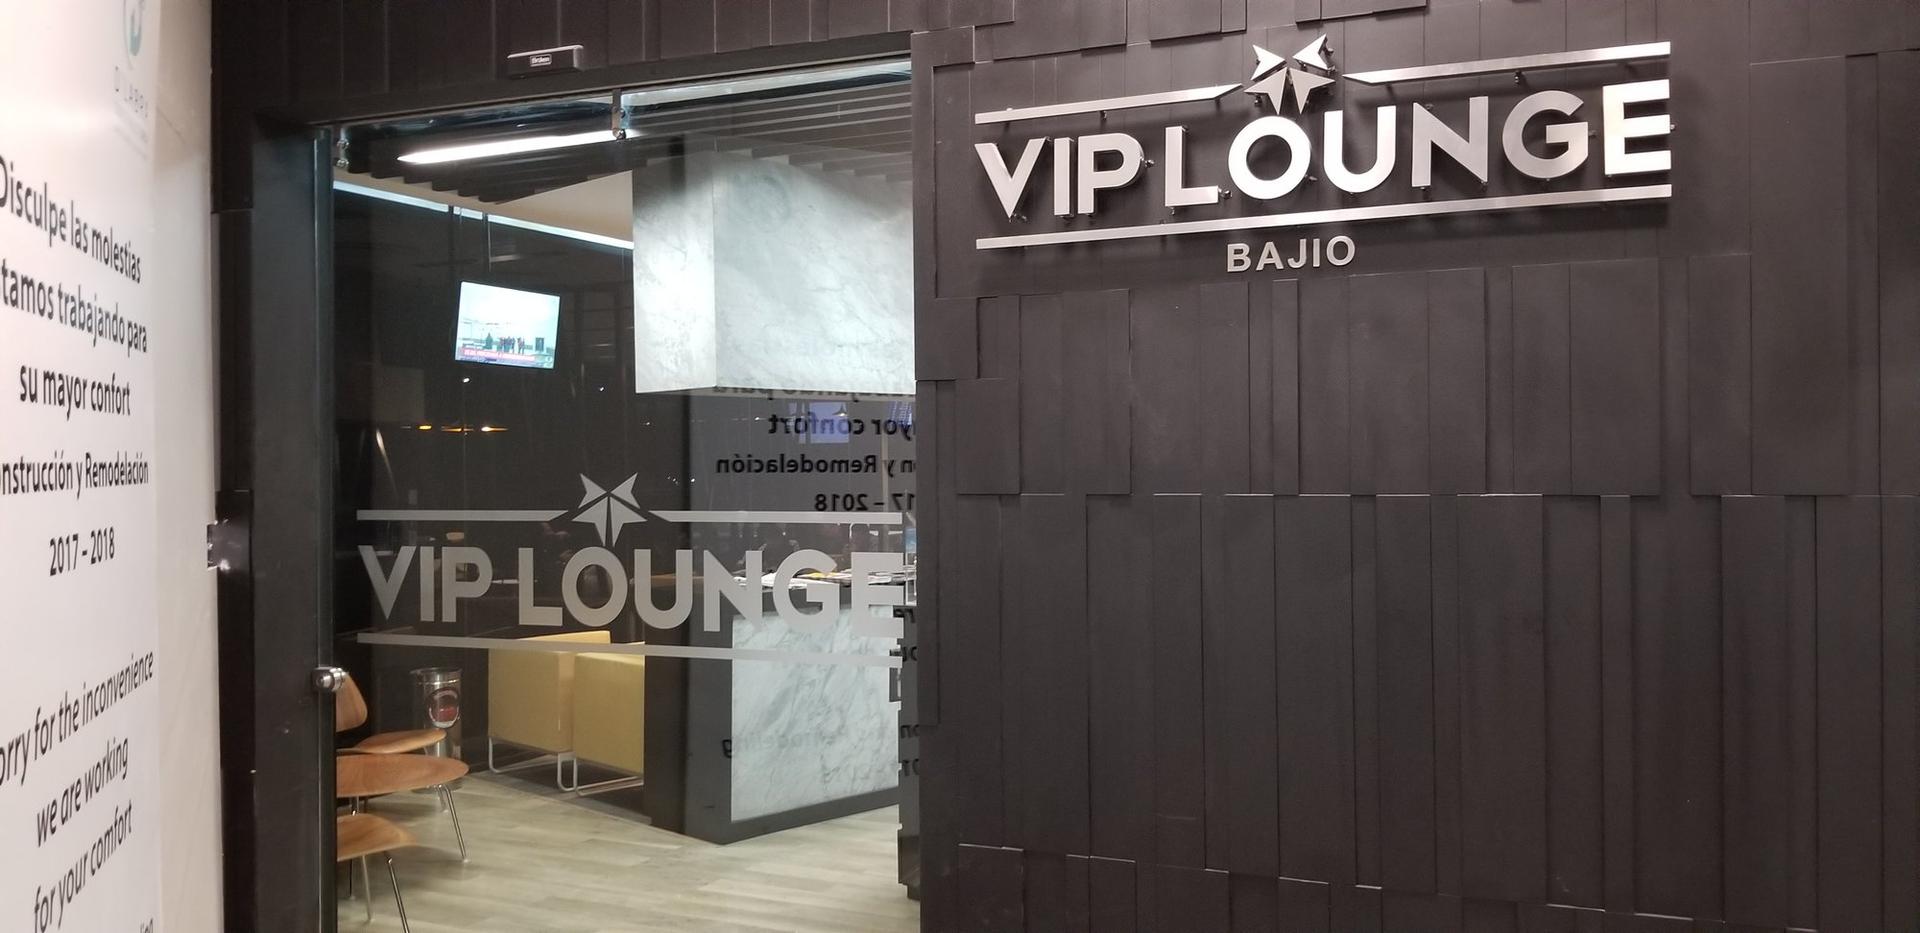 VIP Lounge Bajio image 8 of 10